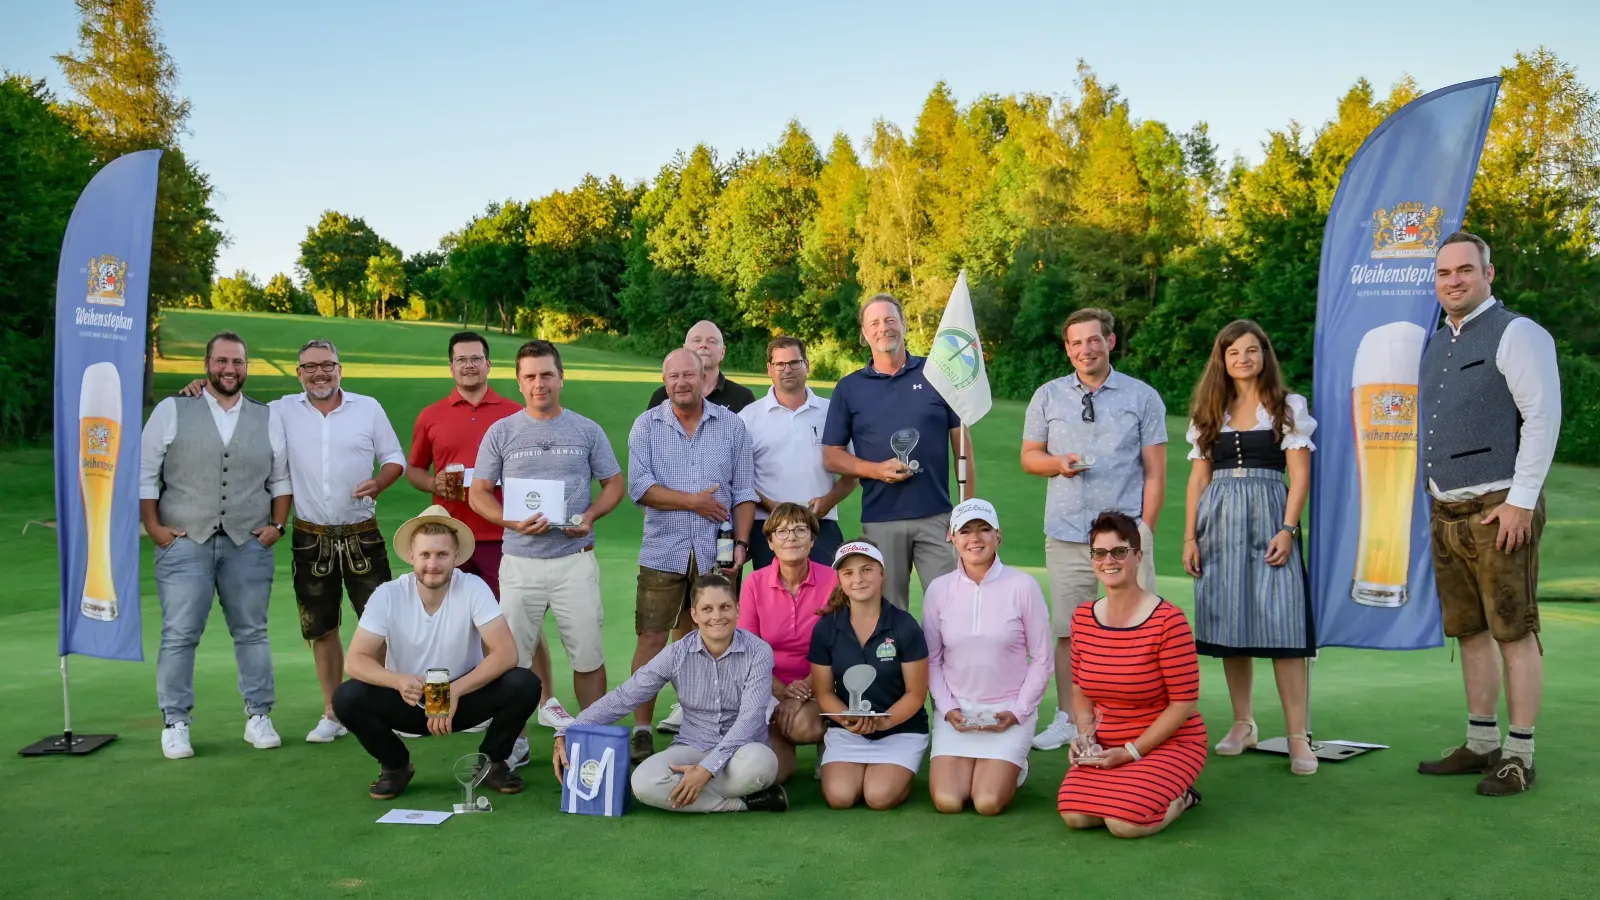 Die Sieger des 14. Weihenstephaner Golfcups am 18. Grün. - Ehrengast und Bruttosiegerin der Damen: Jayne Pardus, vorn, 2. v. re. (Foto: cba)